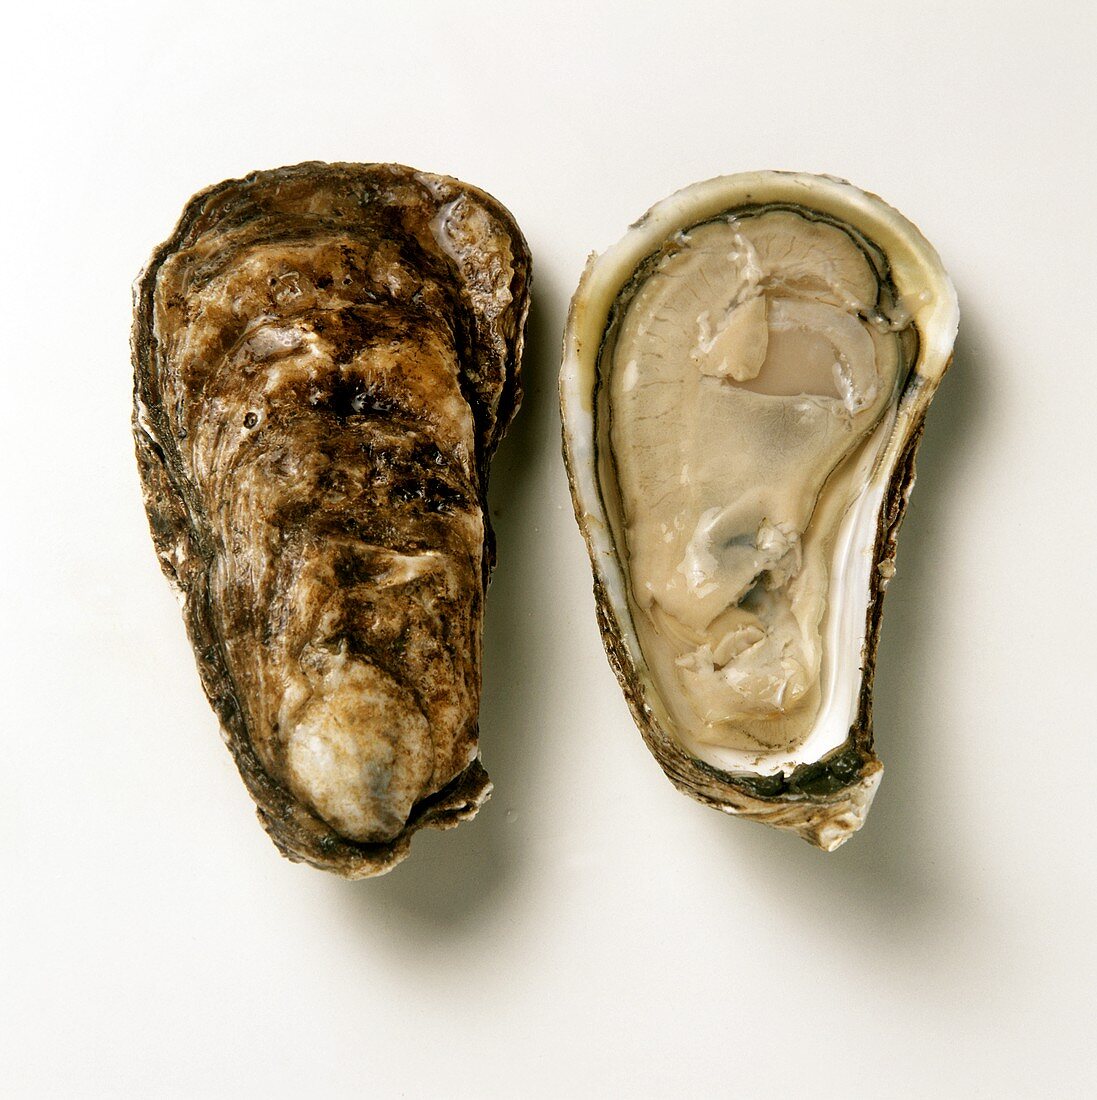 Amerikanische Austern: Chatan von der US-Ostküste